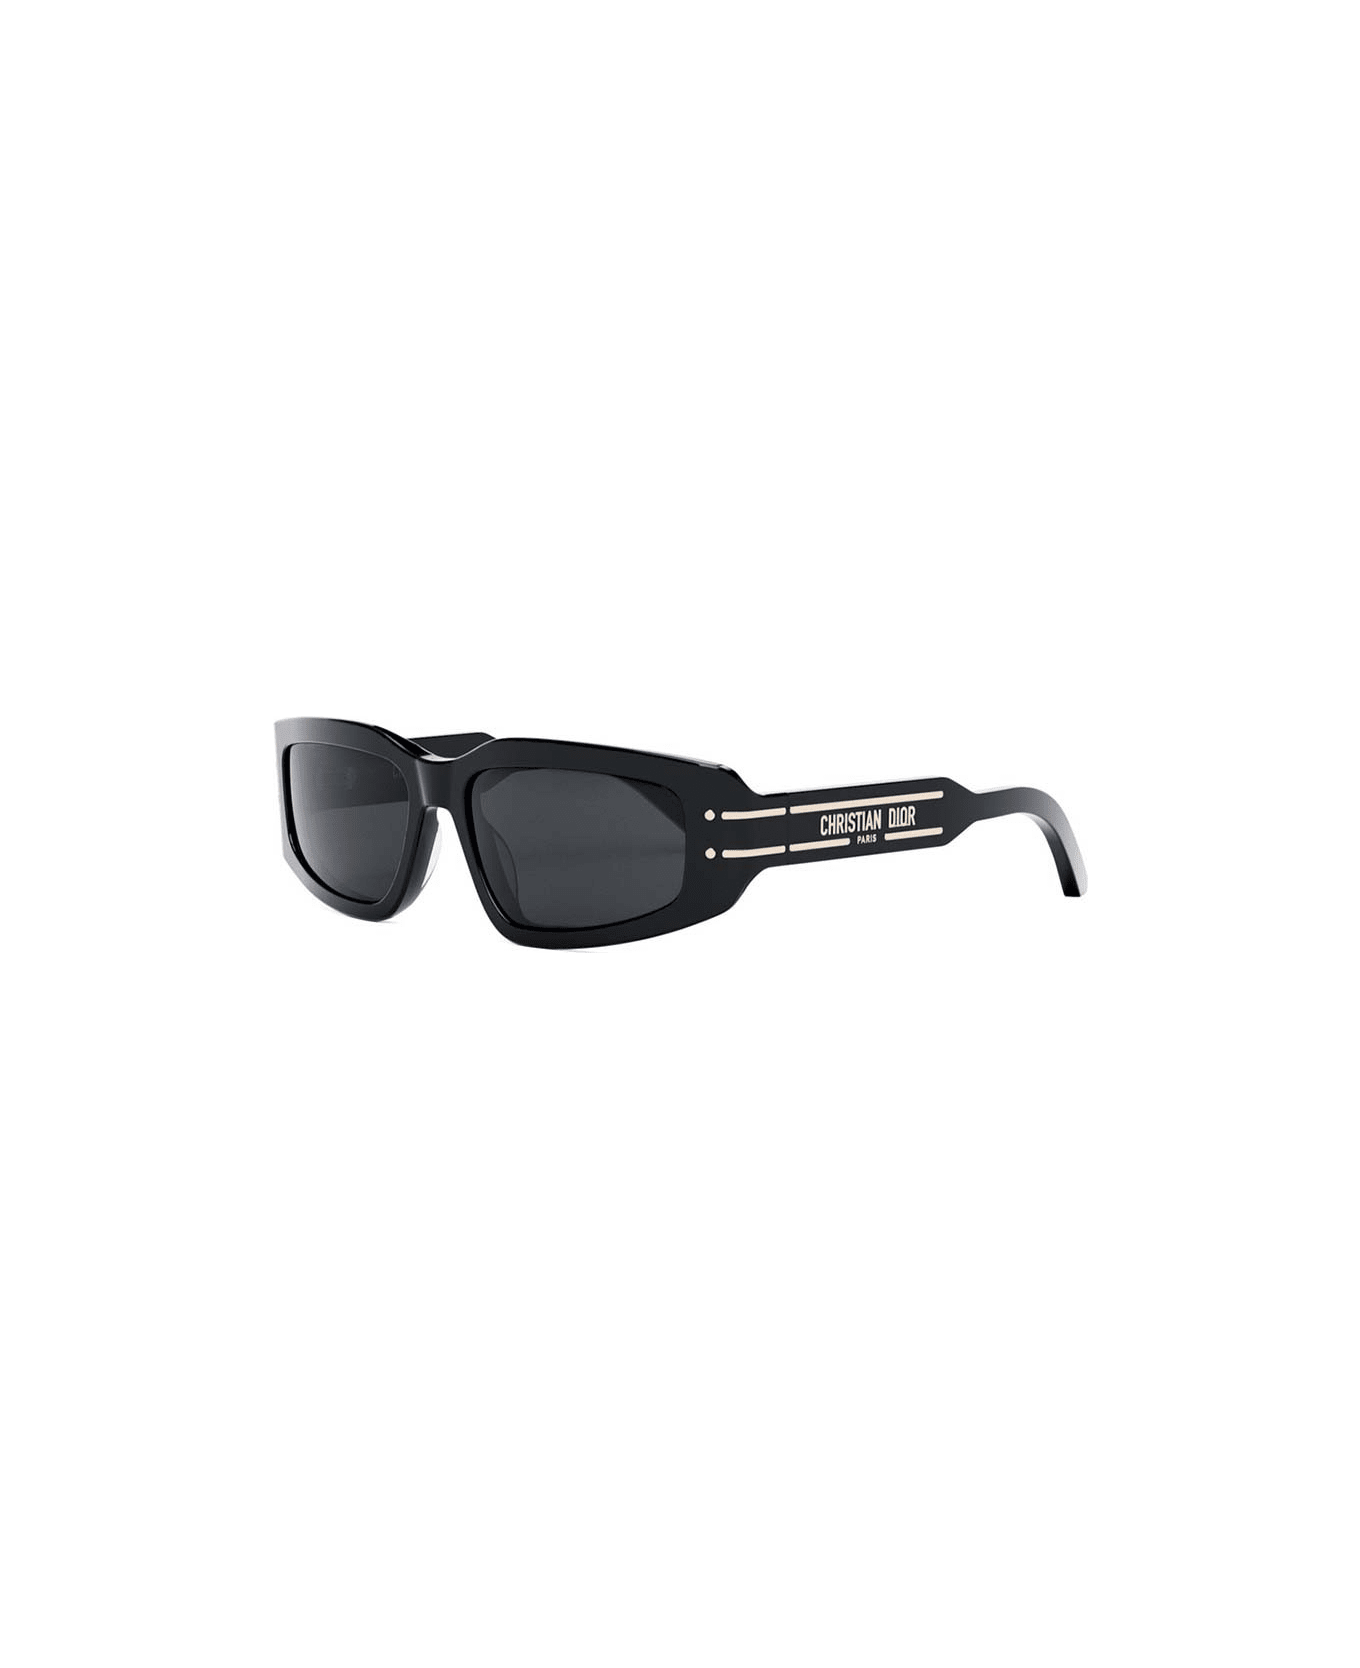 Dior Eyewear Sunglasses - Nero/Grigio サングラス